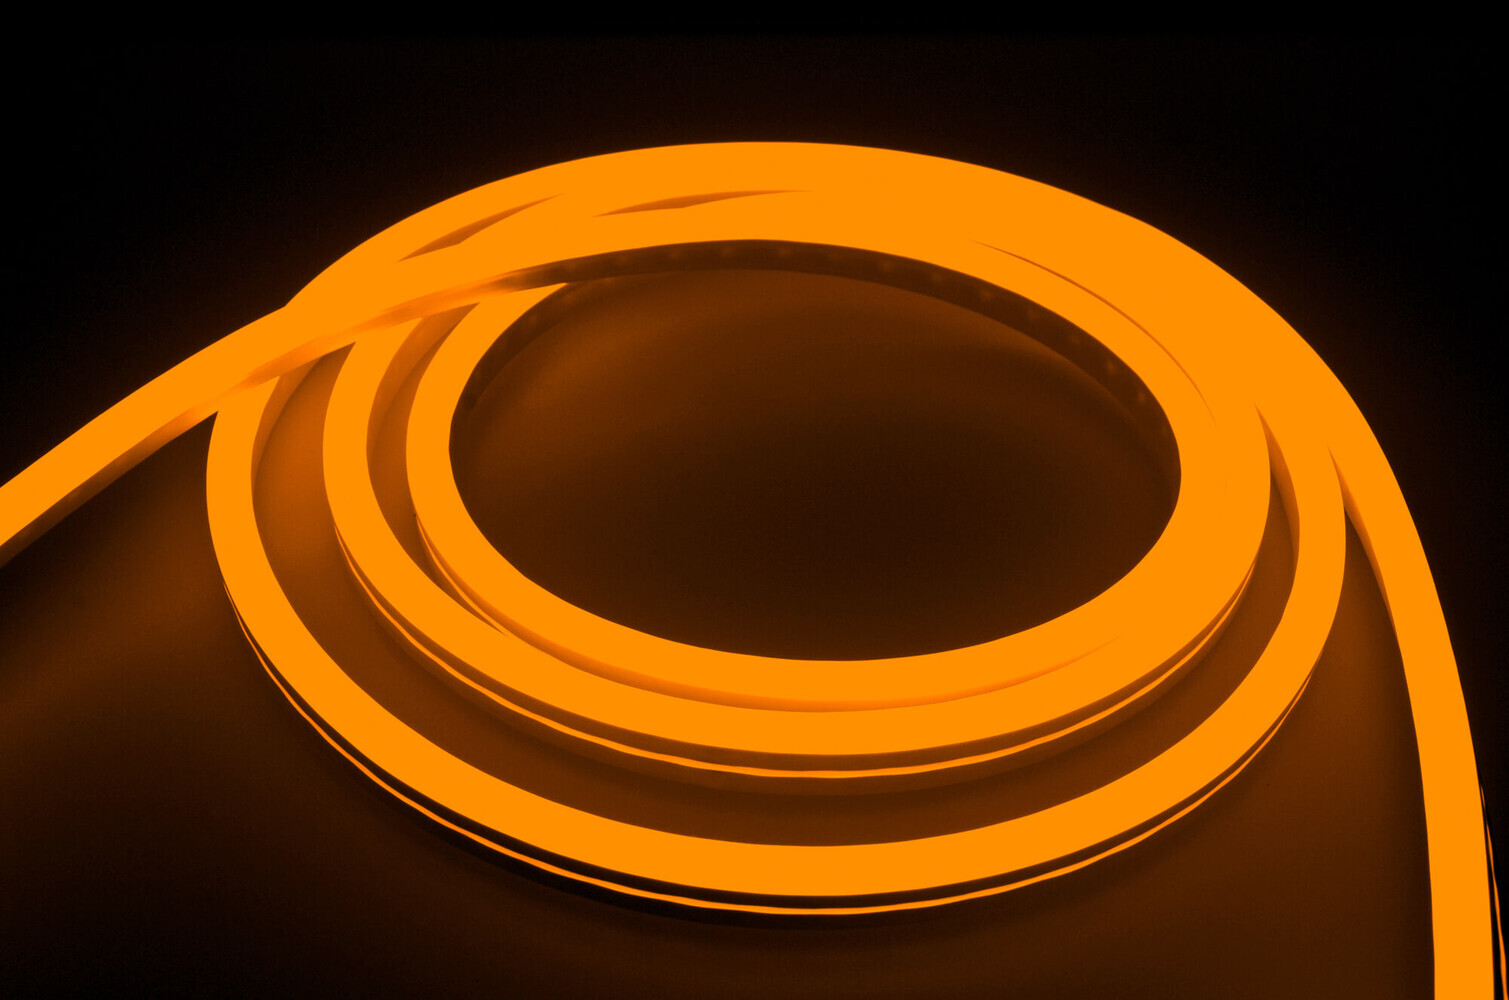 Hochwertiger Professional 230V LED Streifen in orange, IP66 geschützt, inklusive Netzanschlusskabel von LED Universum